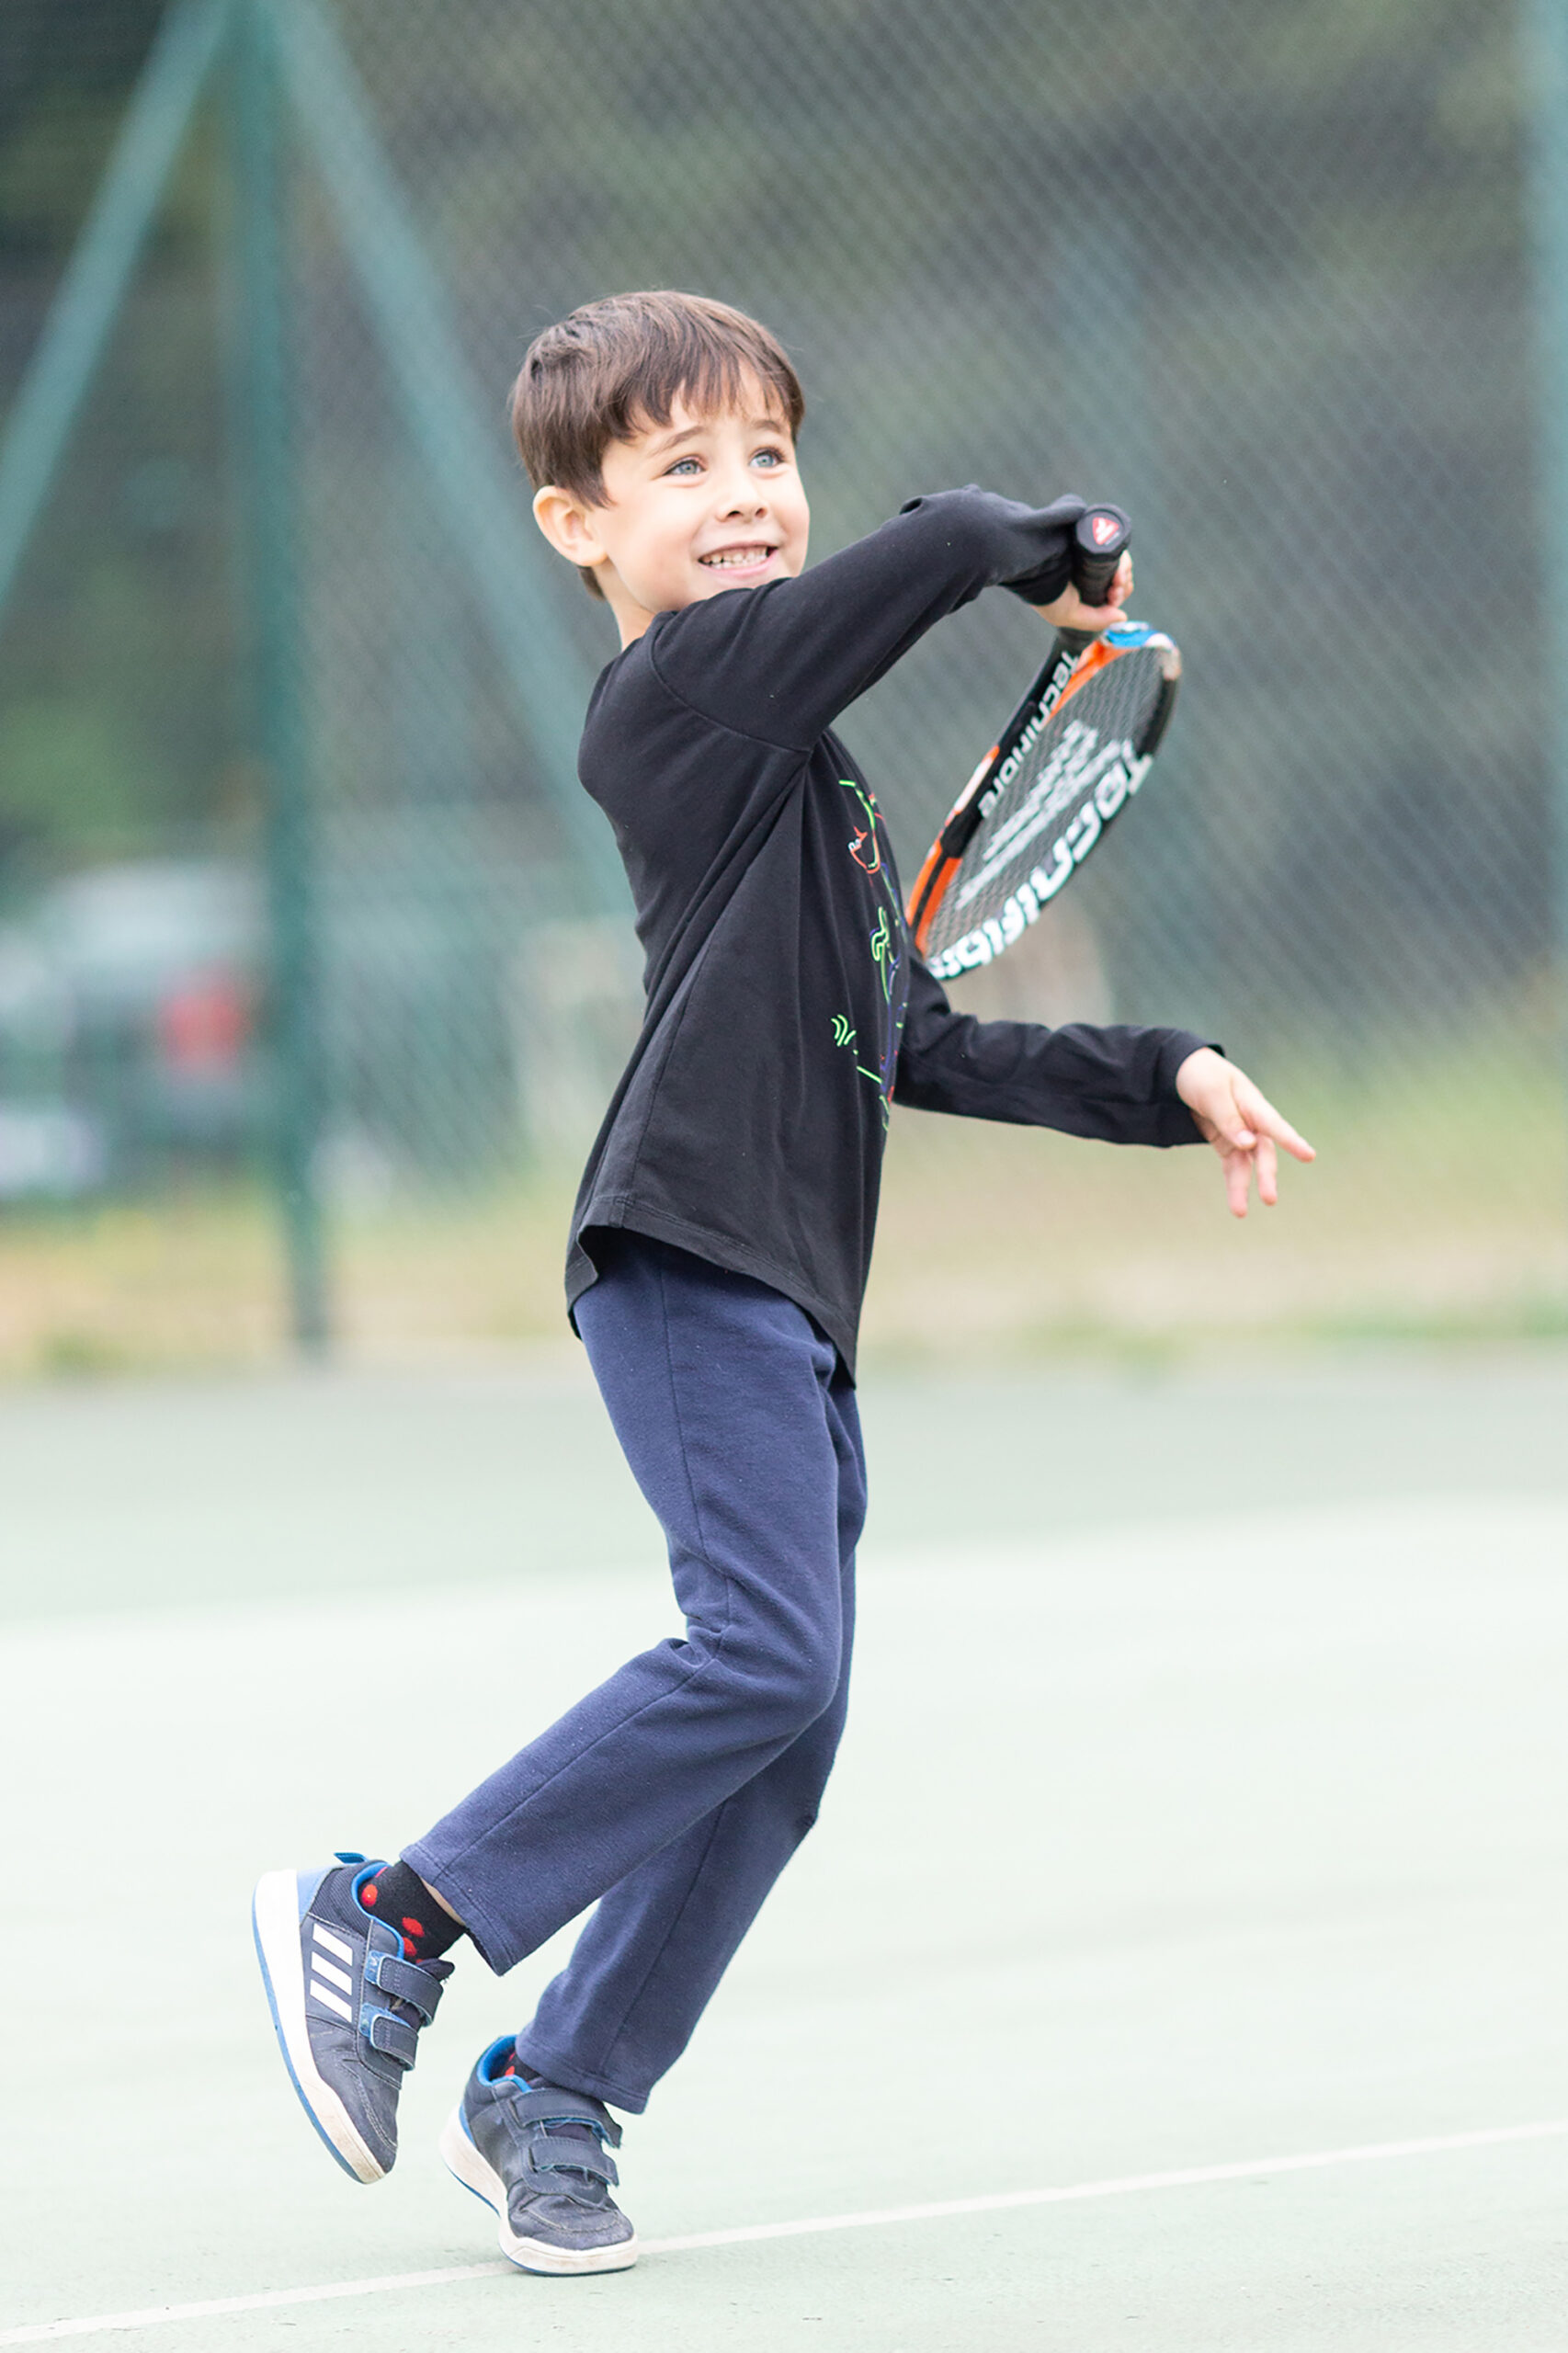 Photo prise sur le vif d'un enfant jouant au tennis à Fayence.